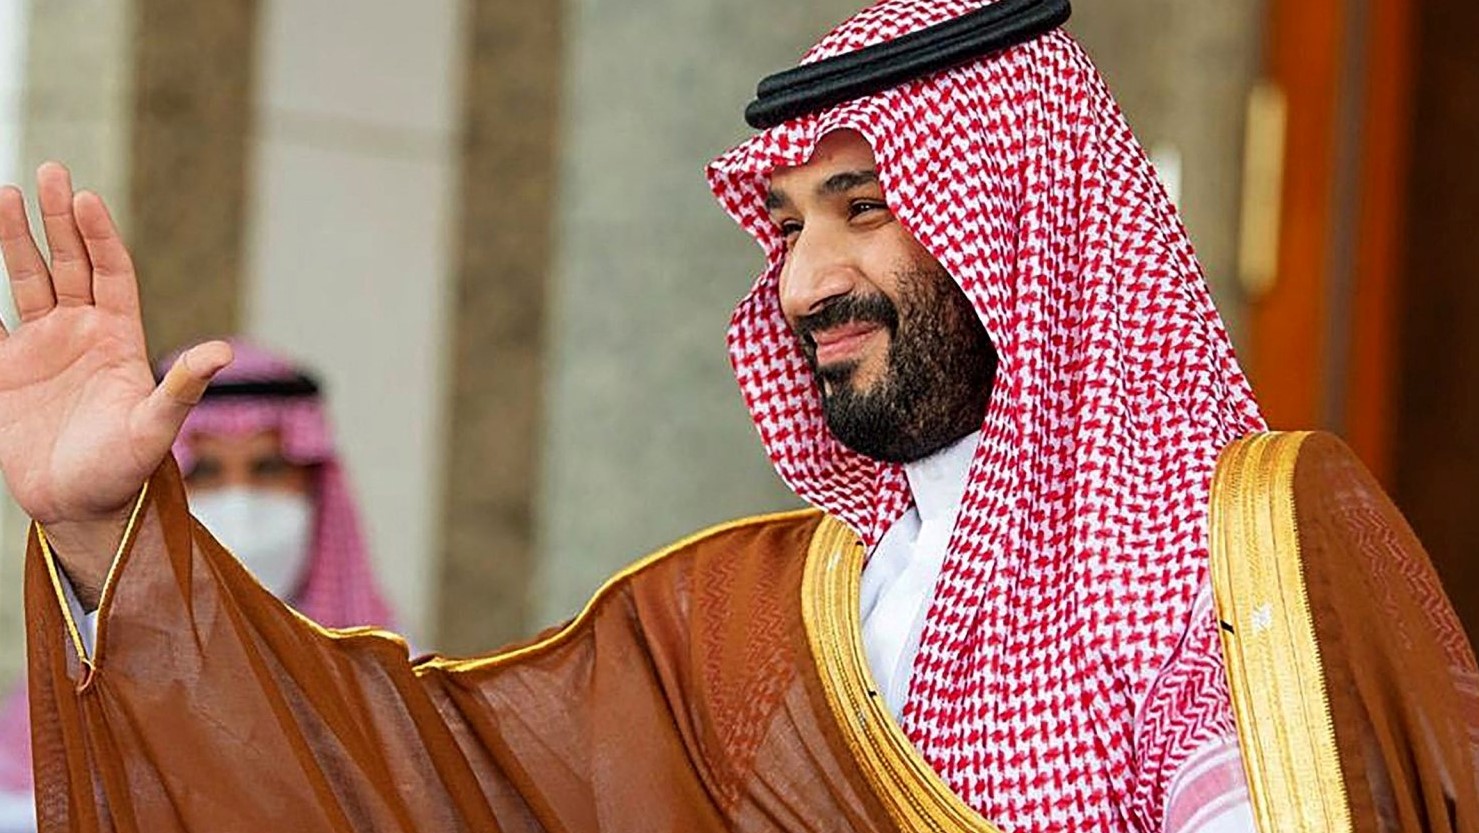 الملك السعودي سلمان بن عبد العزيز آل سعود يعين ولي عهده الأمير محمد بن سلمان رئيسًا لمجلس الوزراء في السعودية